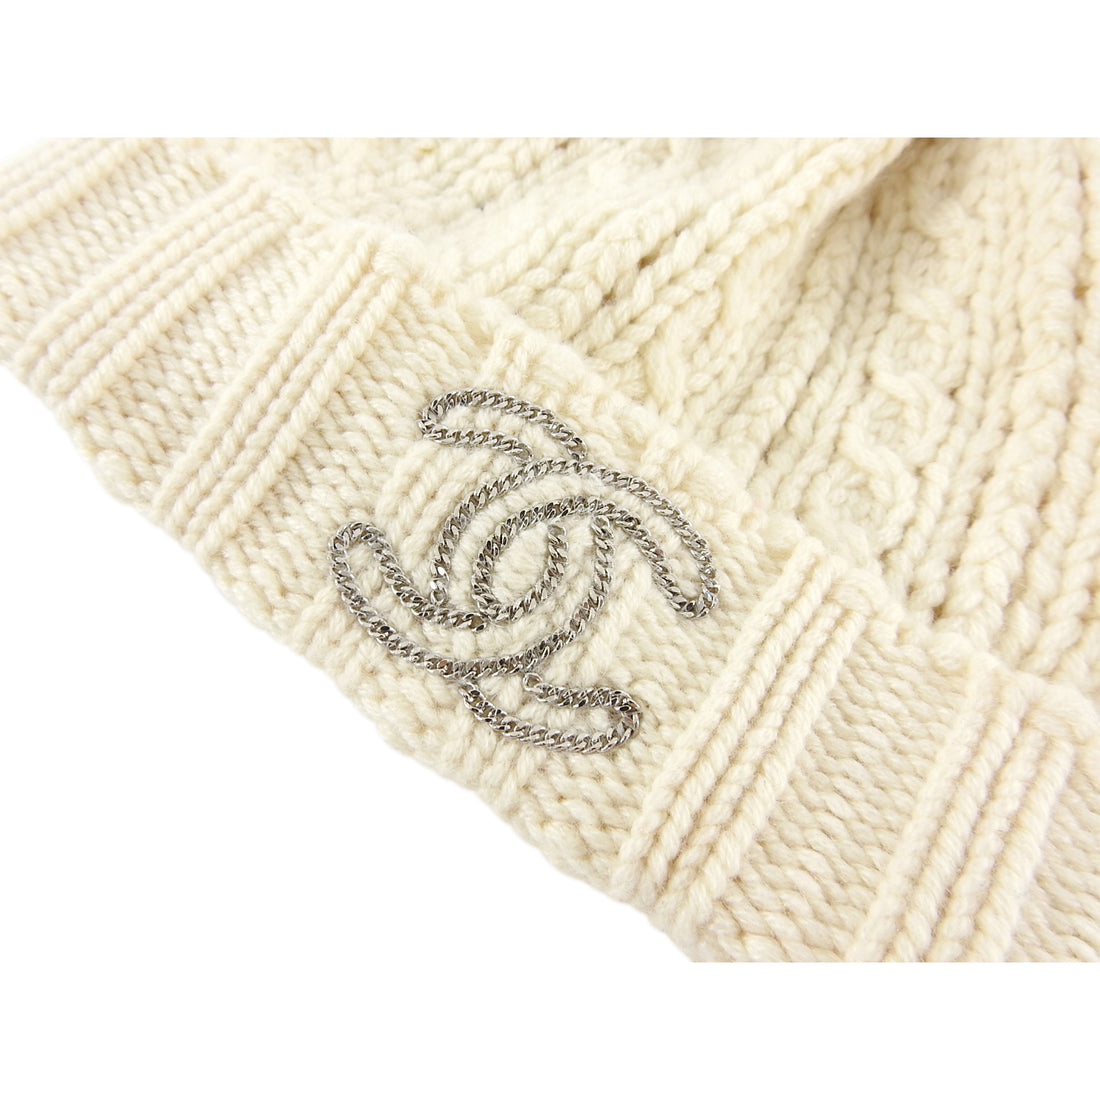 CHANEL Cashmere Wool Silk Logo Beanie Hat Beige White 907506